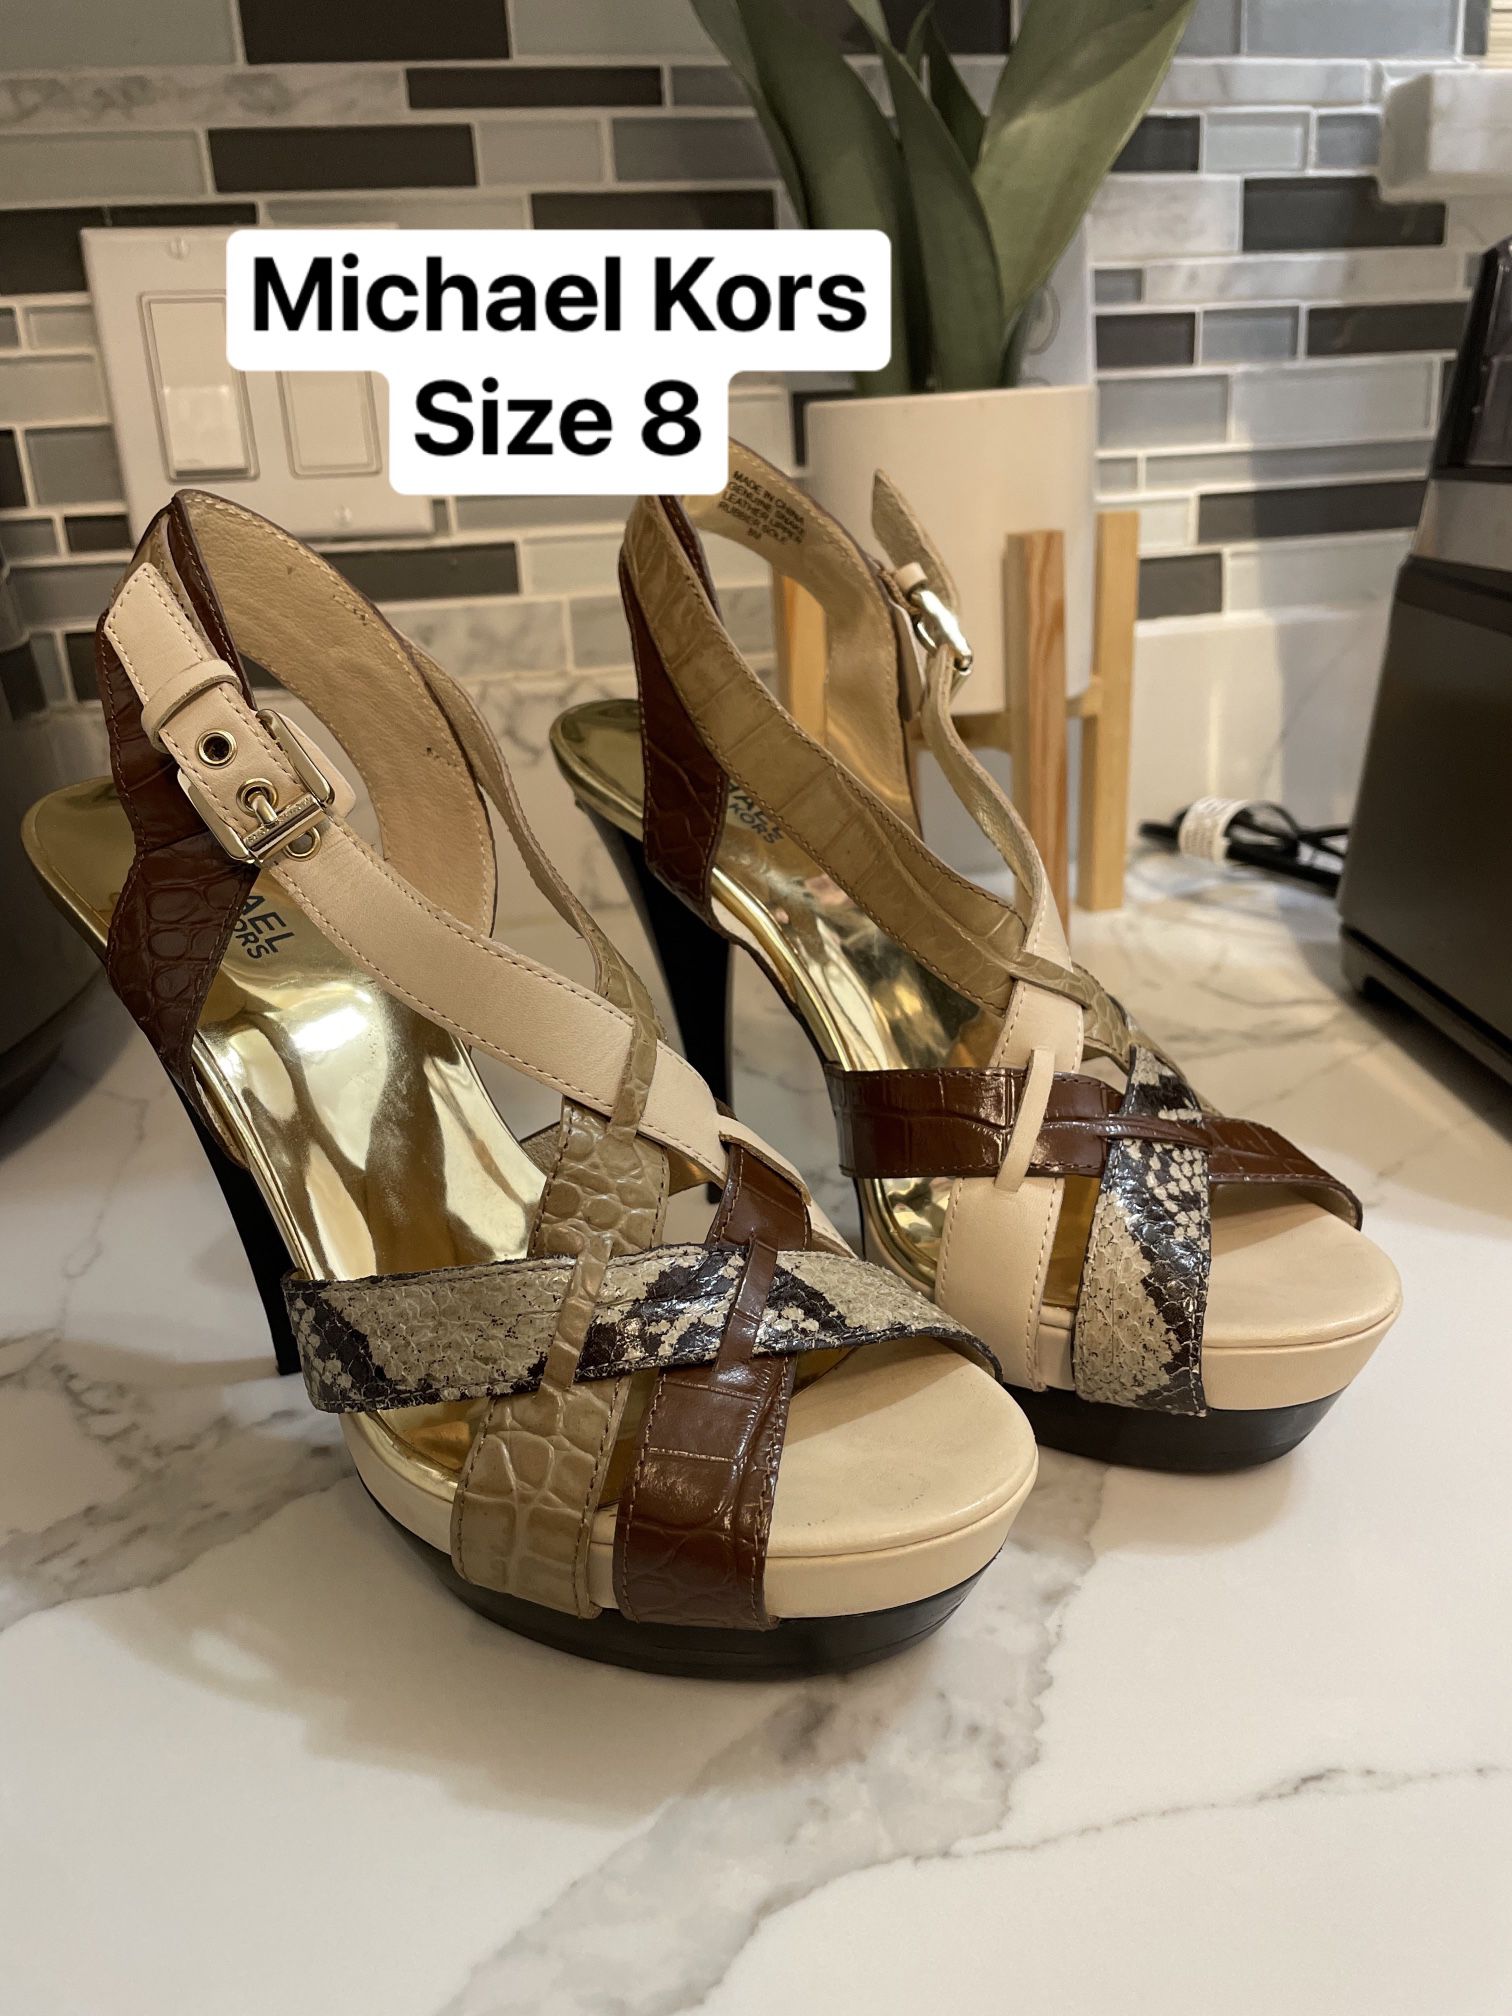 Michael Kors Size 8 Ladies Shoes 